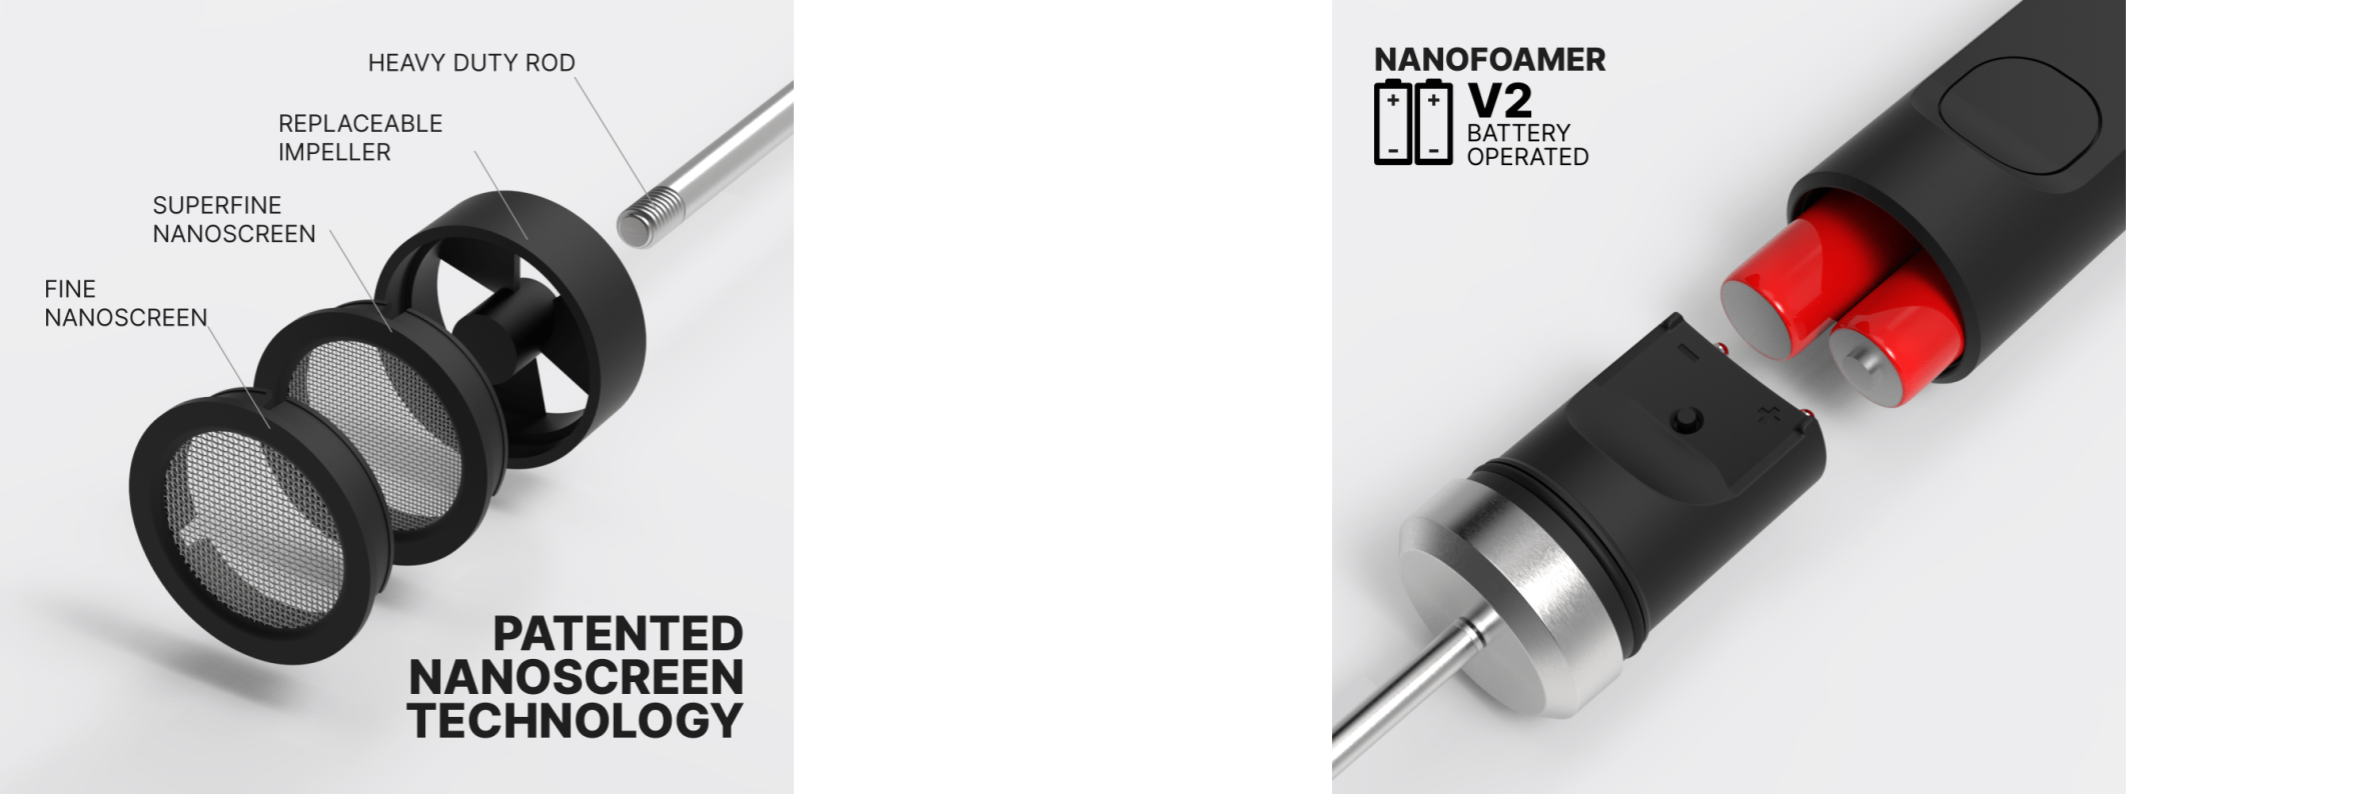 NanoFoamer V2 & Lithium 